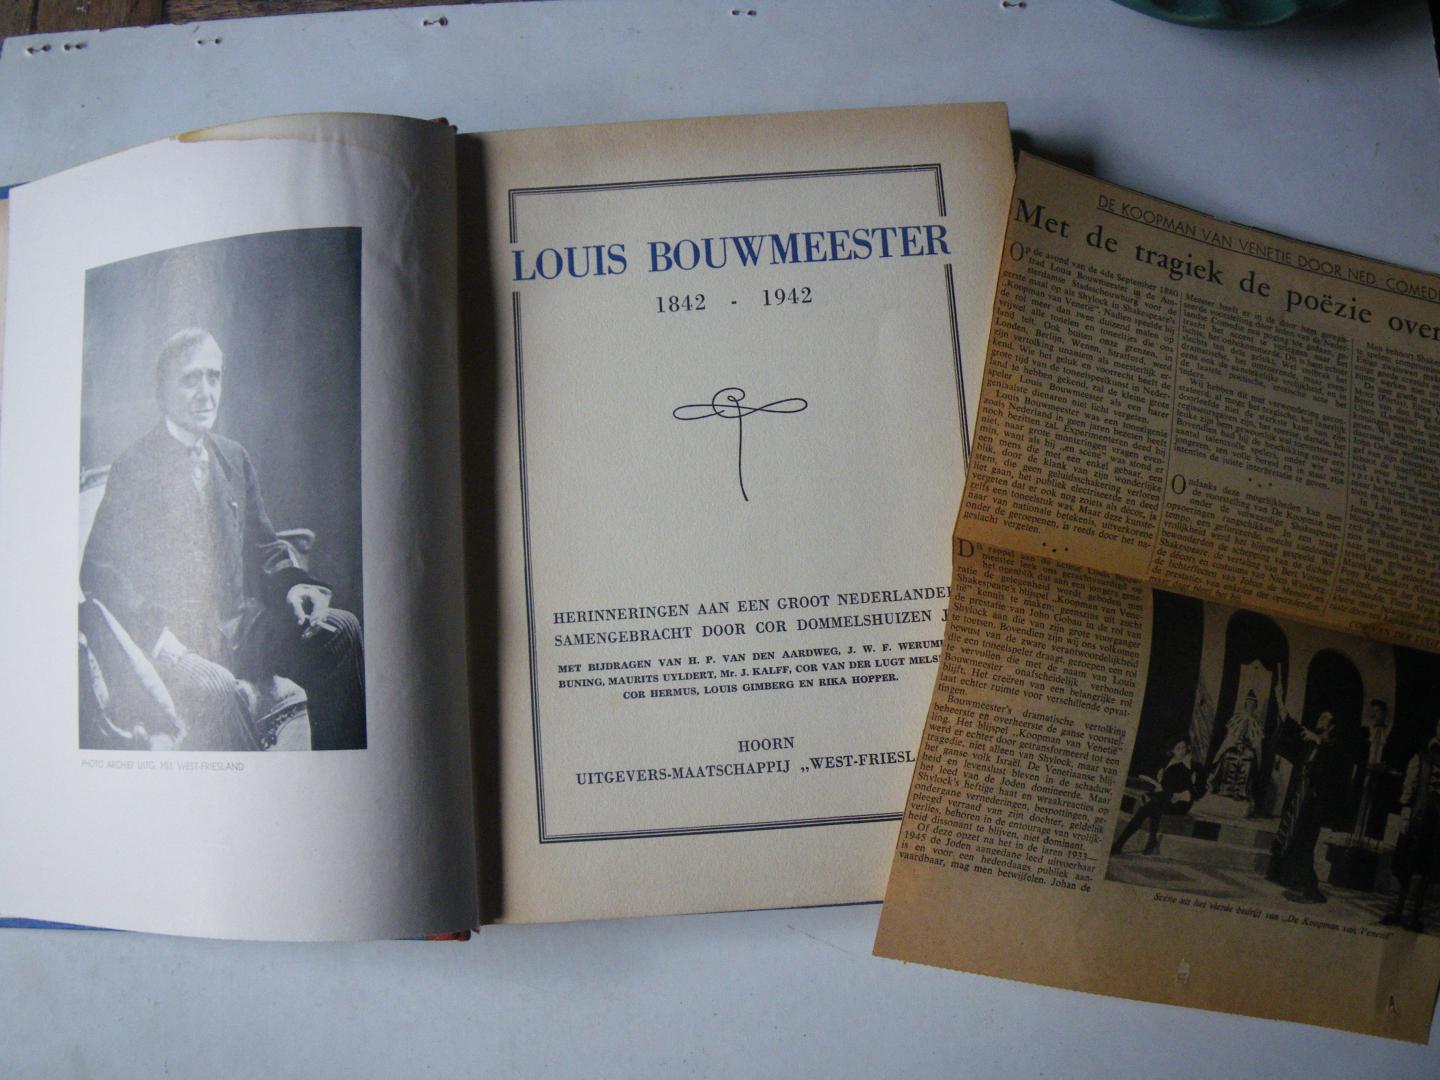 Dommelshuizen Jr., Cor (SAMENGEBRACHT DOOR) - Louis Bouwmeester 1842 - 1942. Herinneringen aan een groot Nederlander